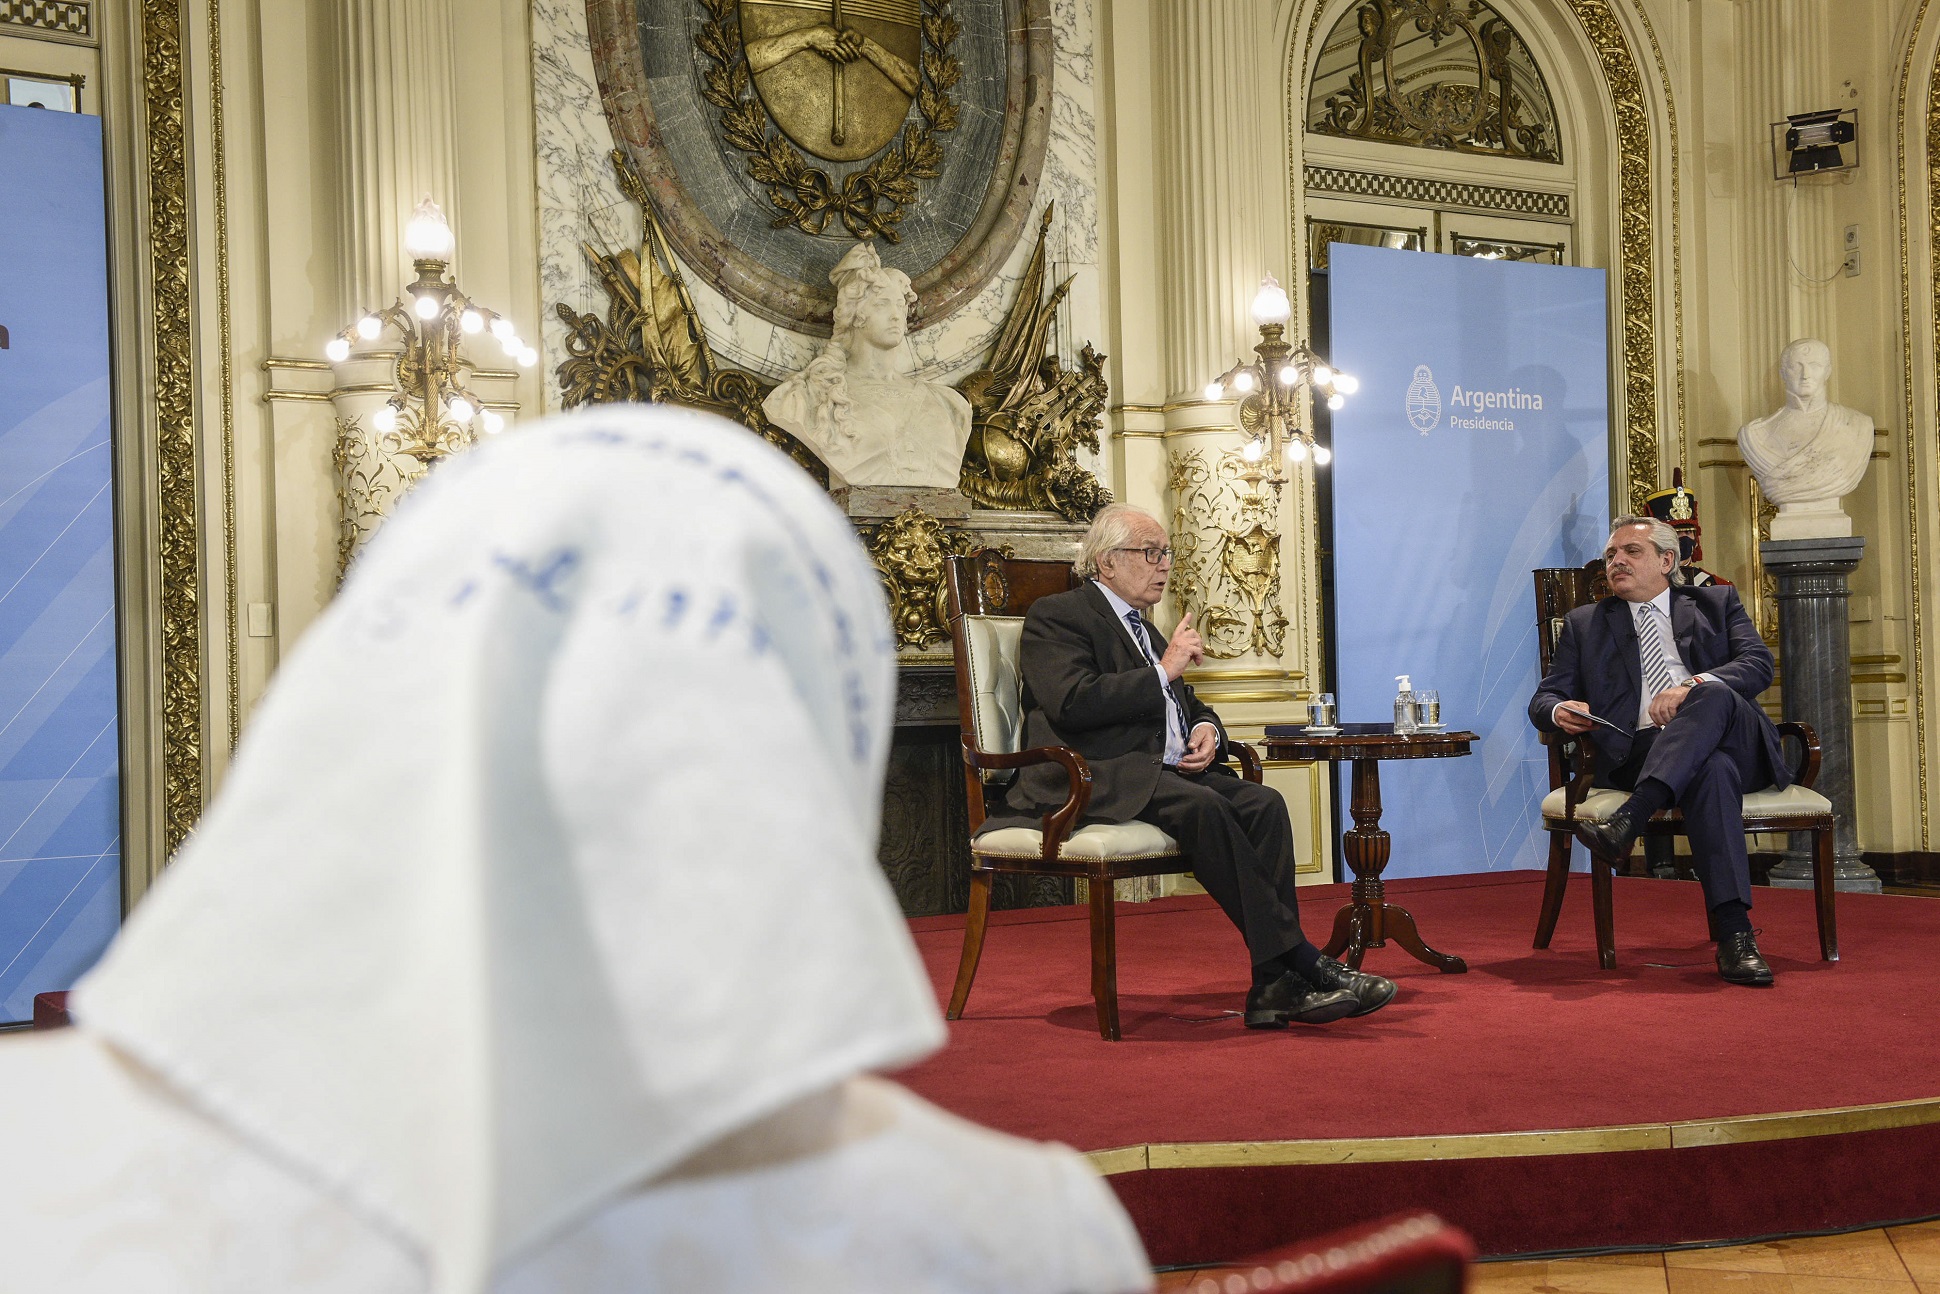 El Presidente rindió homenaje a Pérez Esquivel en la Casa Rosada: “Deberías ser modelo de todos los argentinos”